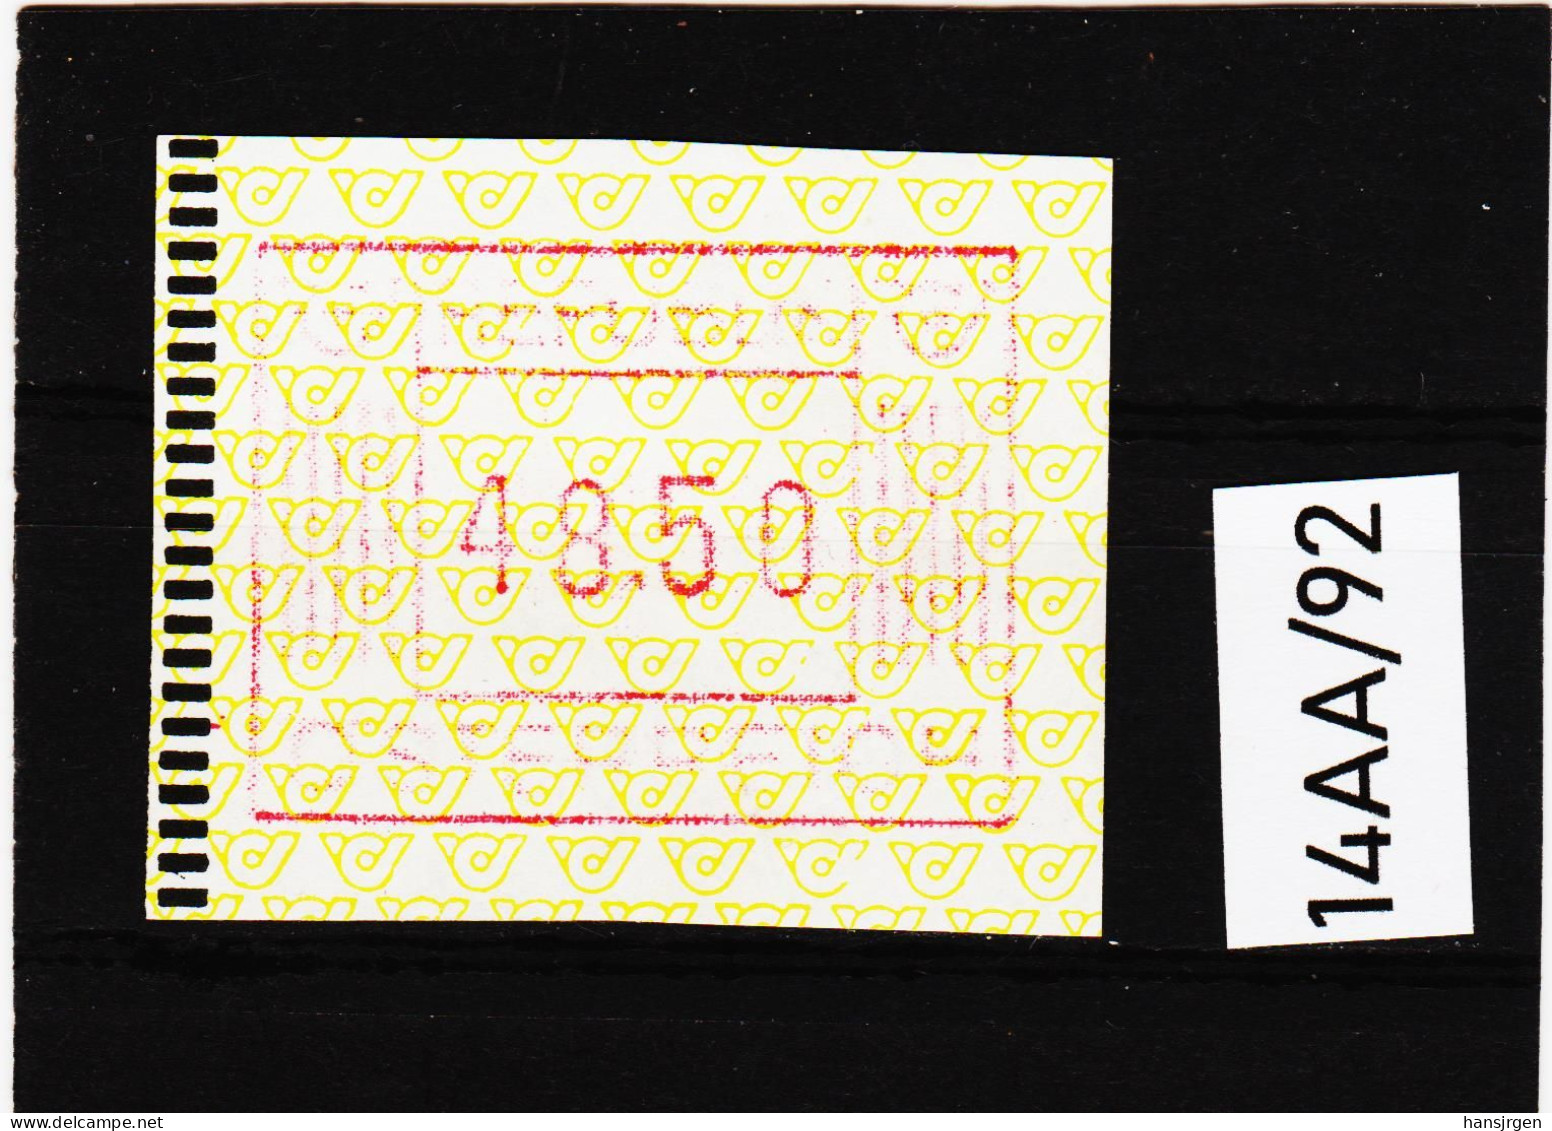 14AA/92  ÖSTERREICH 1983 AUTOMATENMARKEN 1. AUSGABE  48,50 SCHILLING   ** Postfrisch - Machine Labels [ATM]